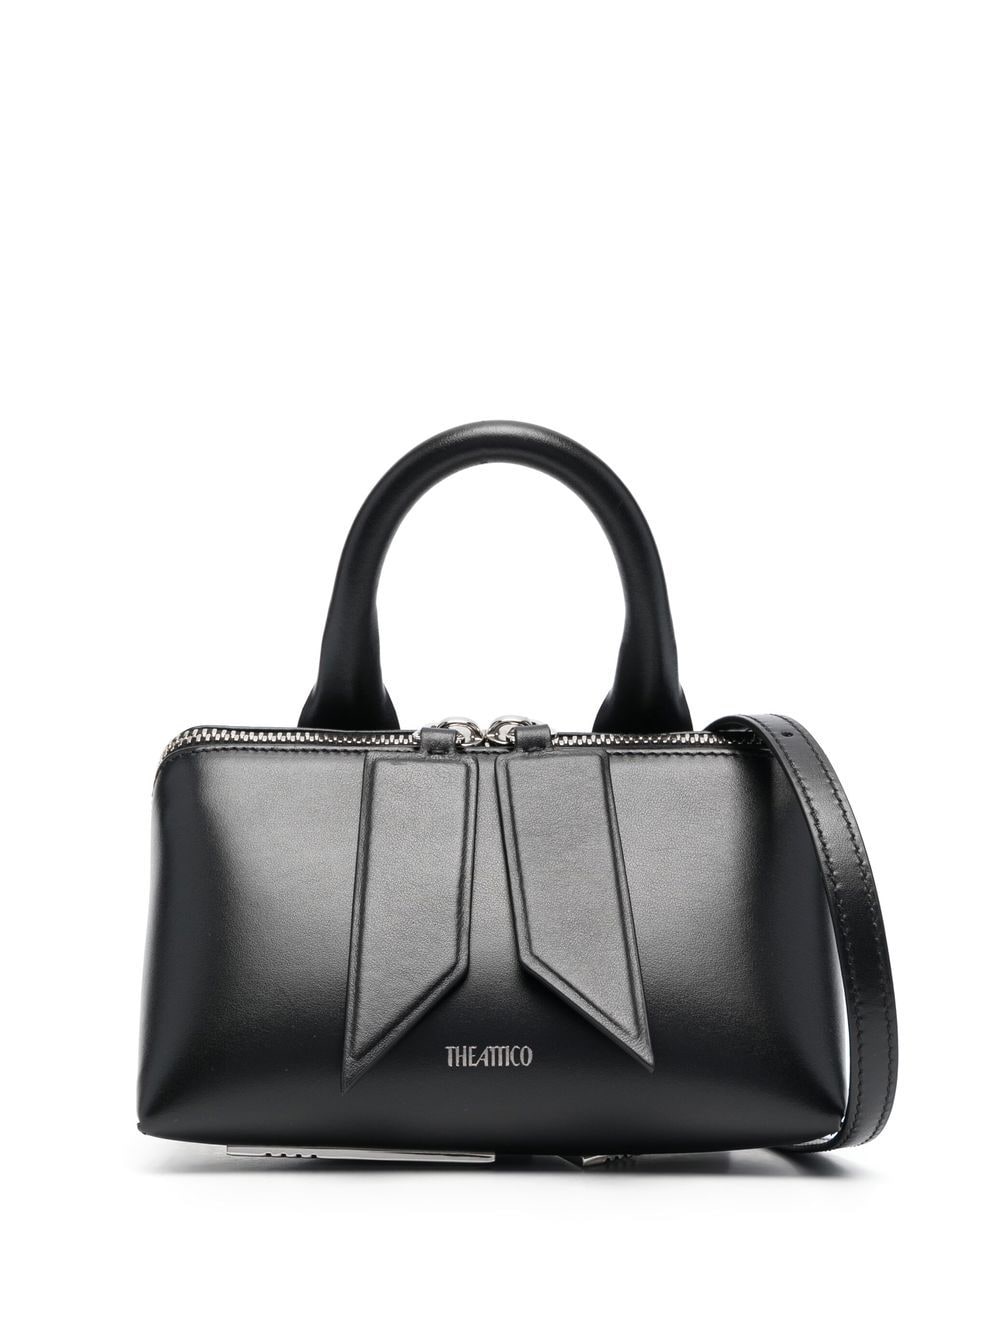 Attico Friday Handbag In Black  